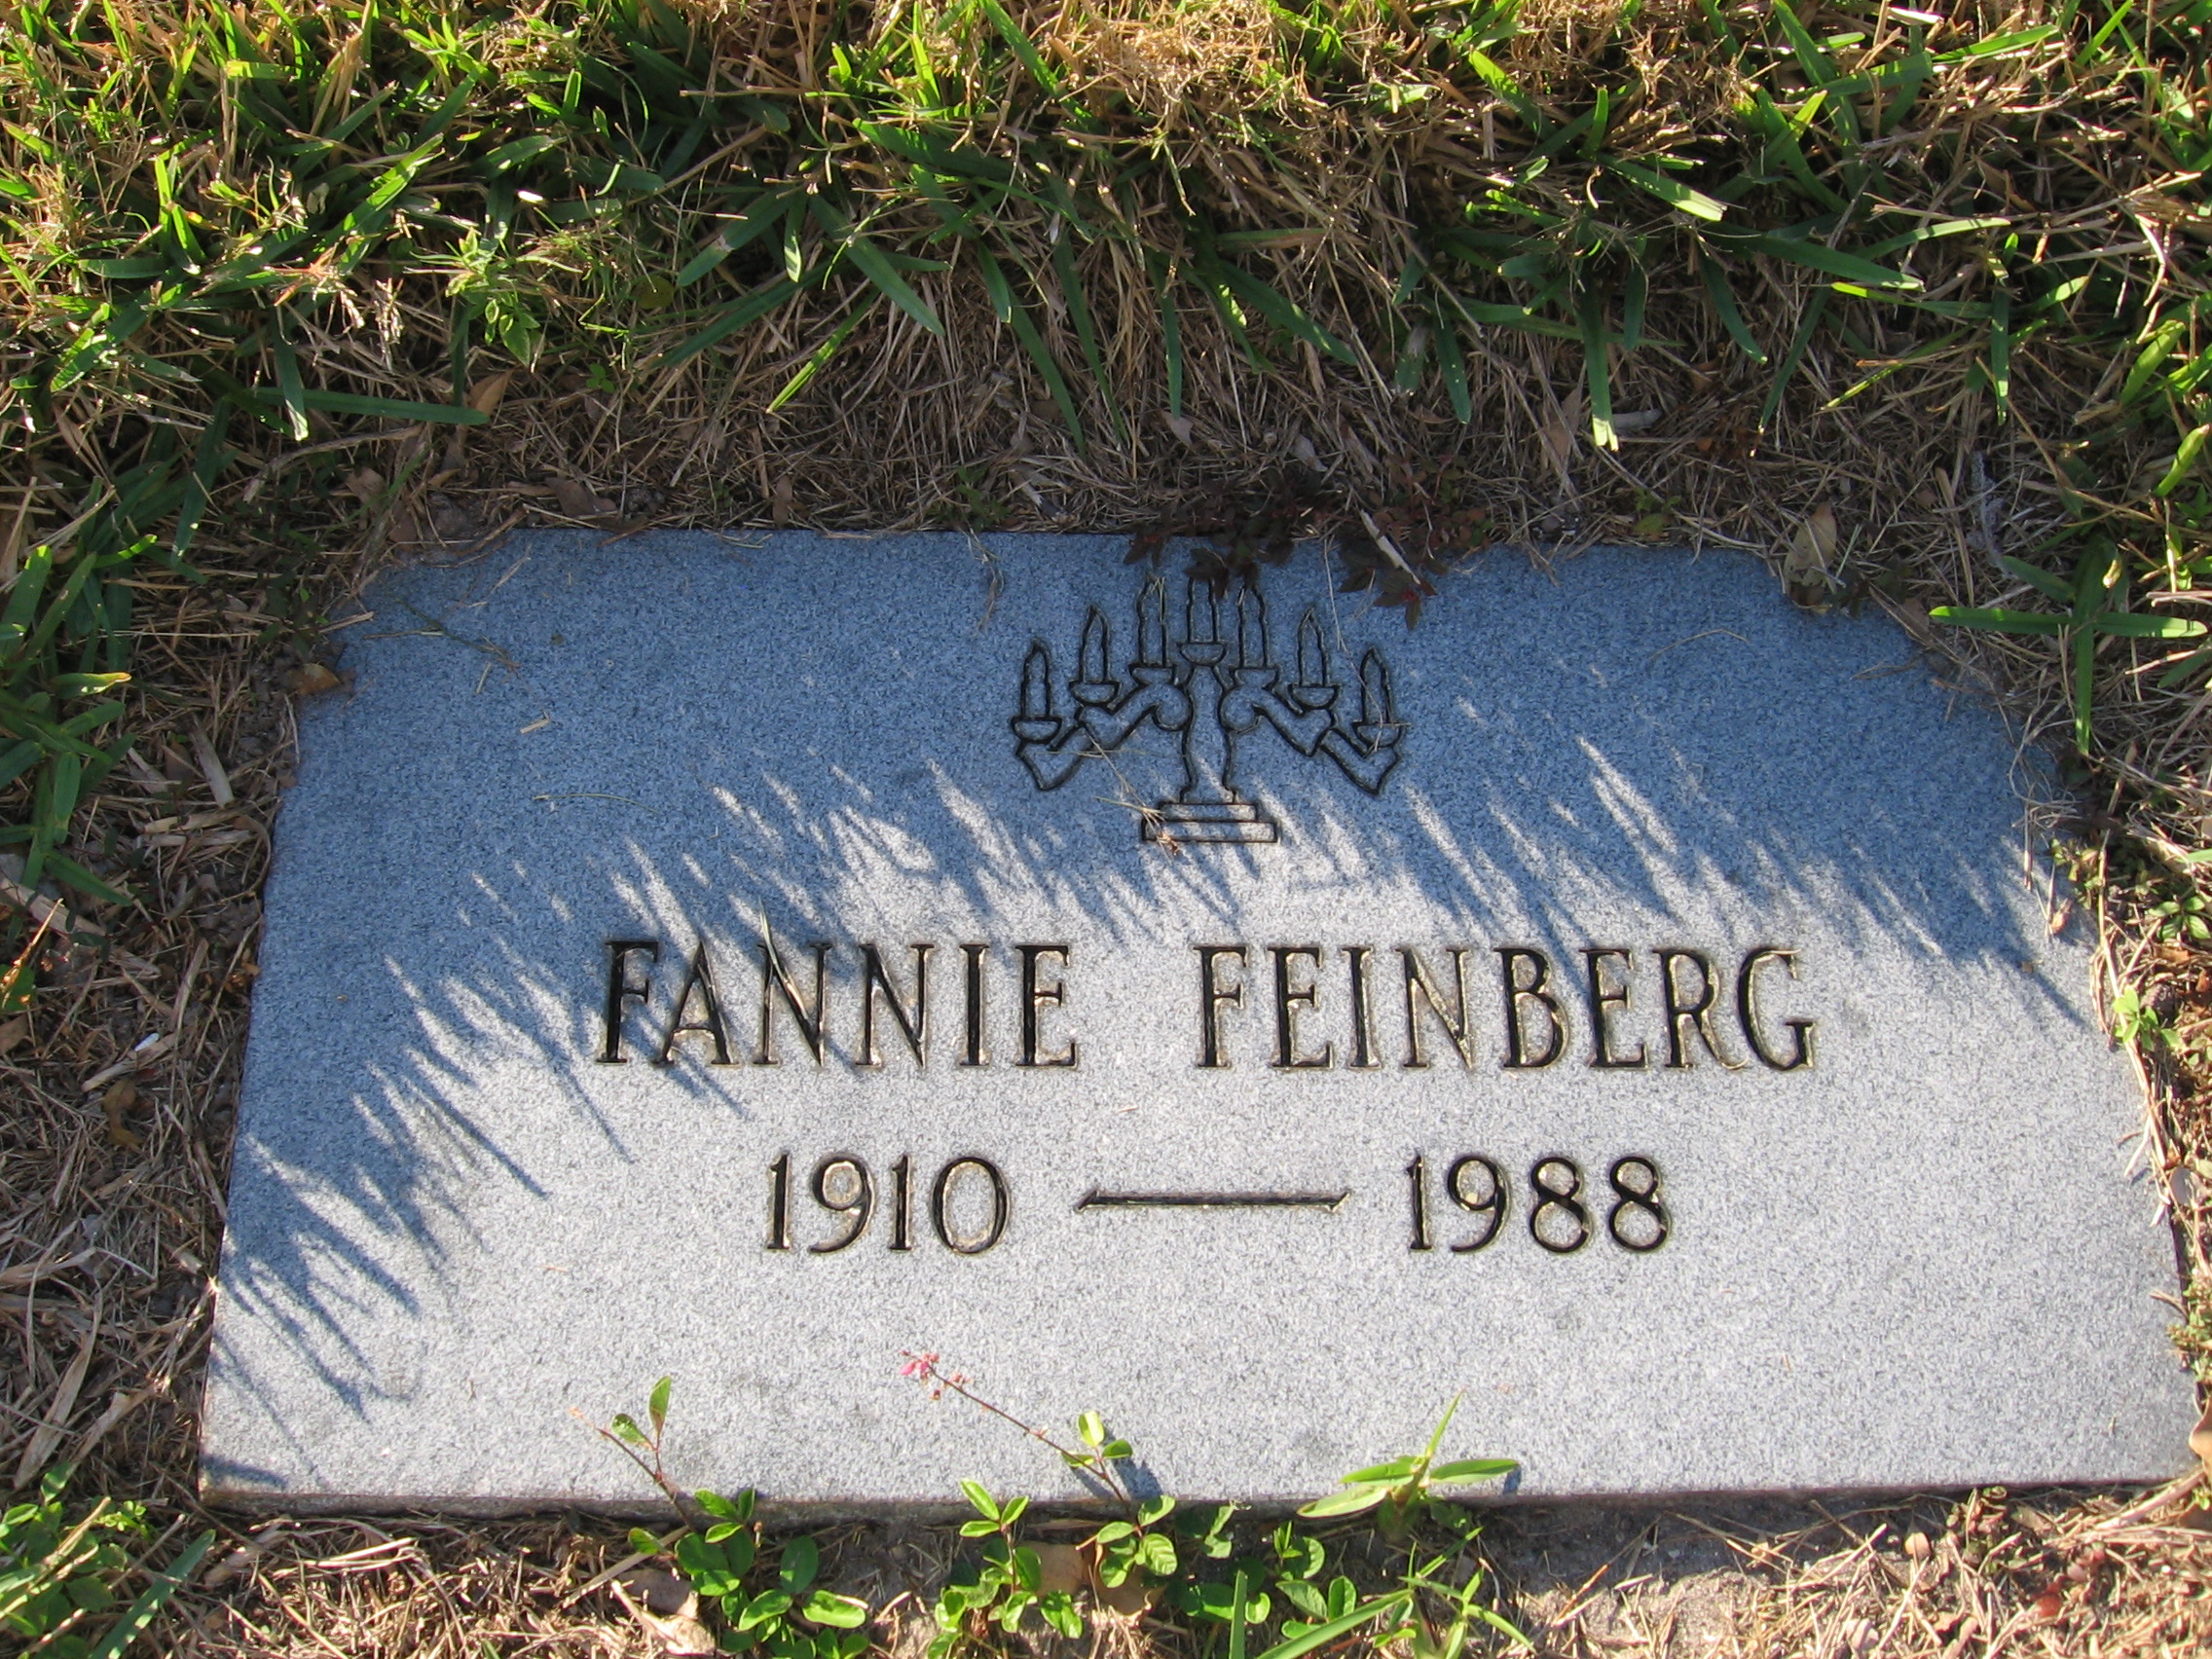 Fannie Feinberg